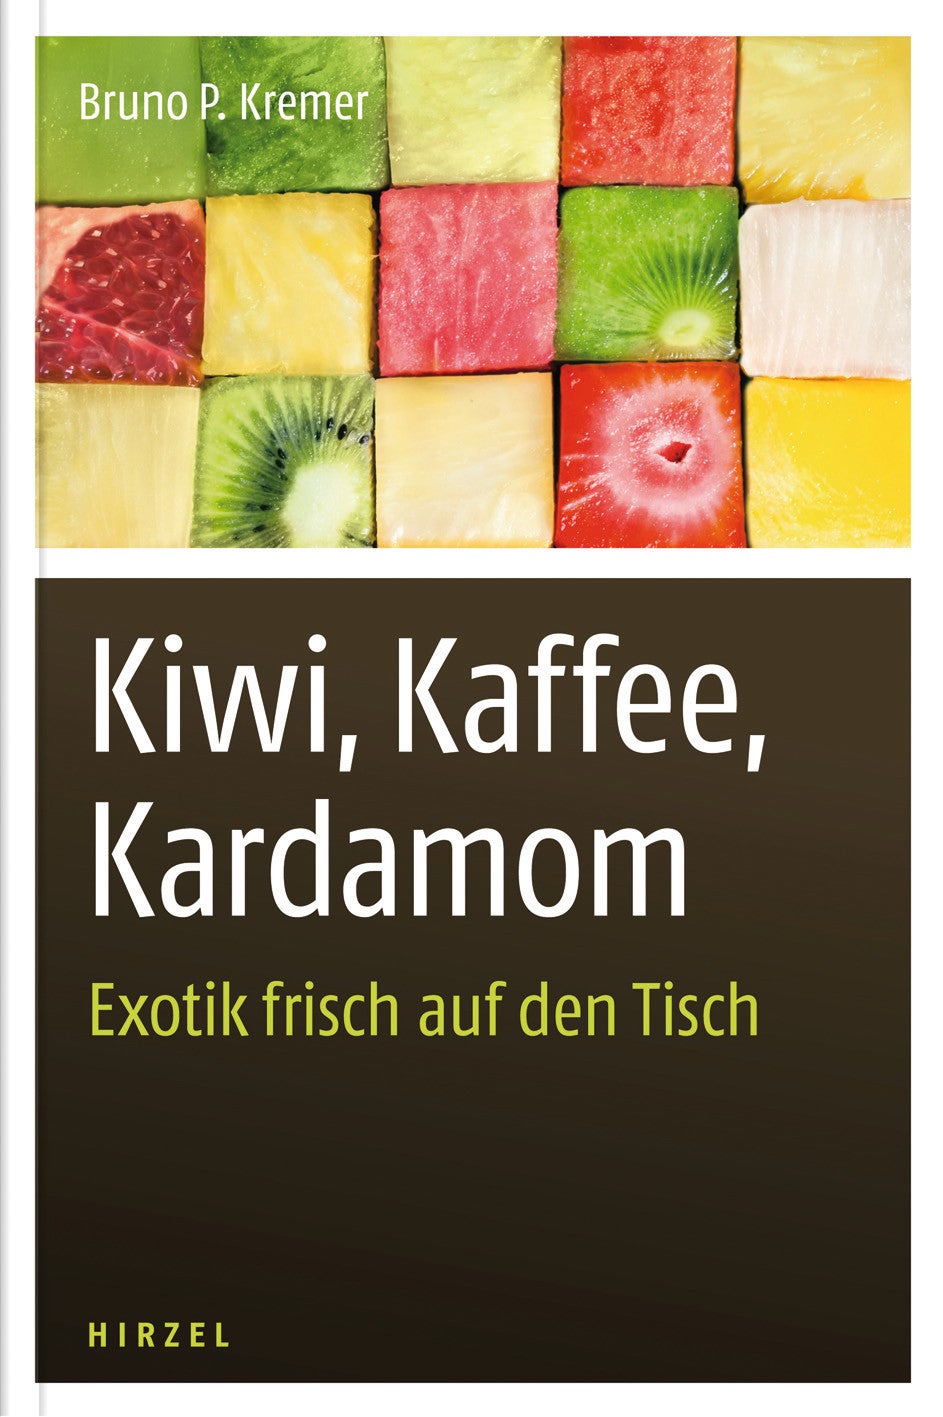 Kiwi, Kaffee, Kardamom